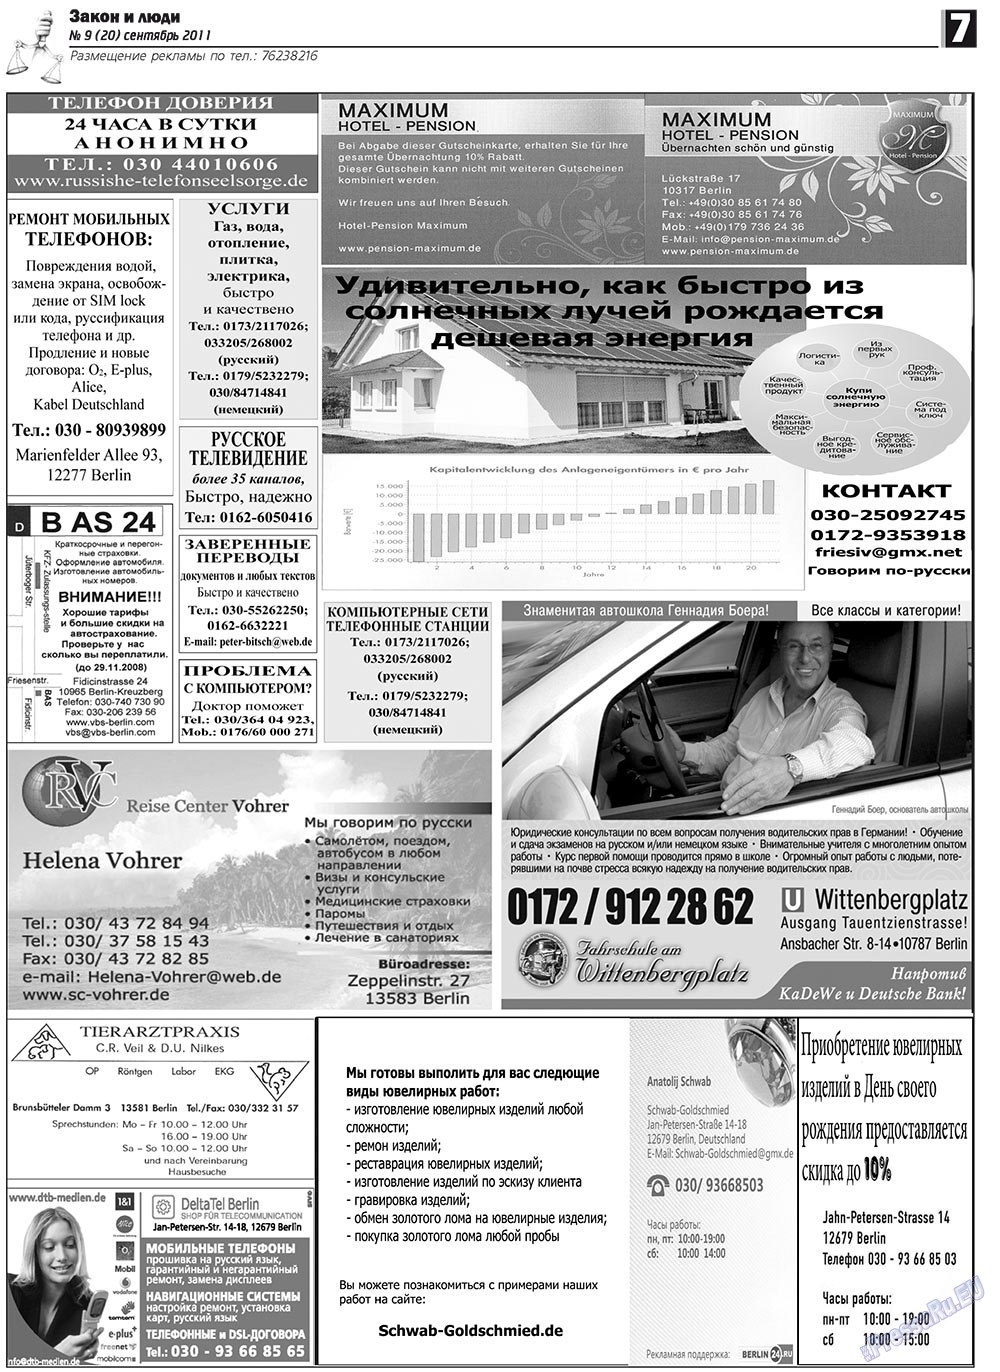 Закон и люди, газета. 2011 №9 стр.7